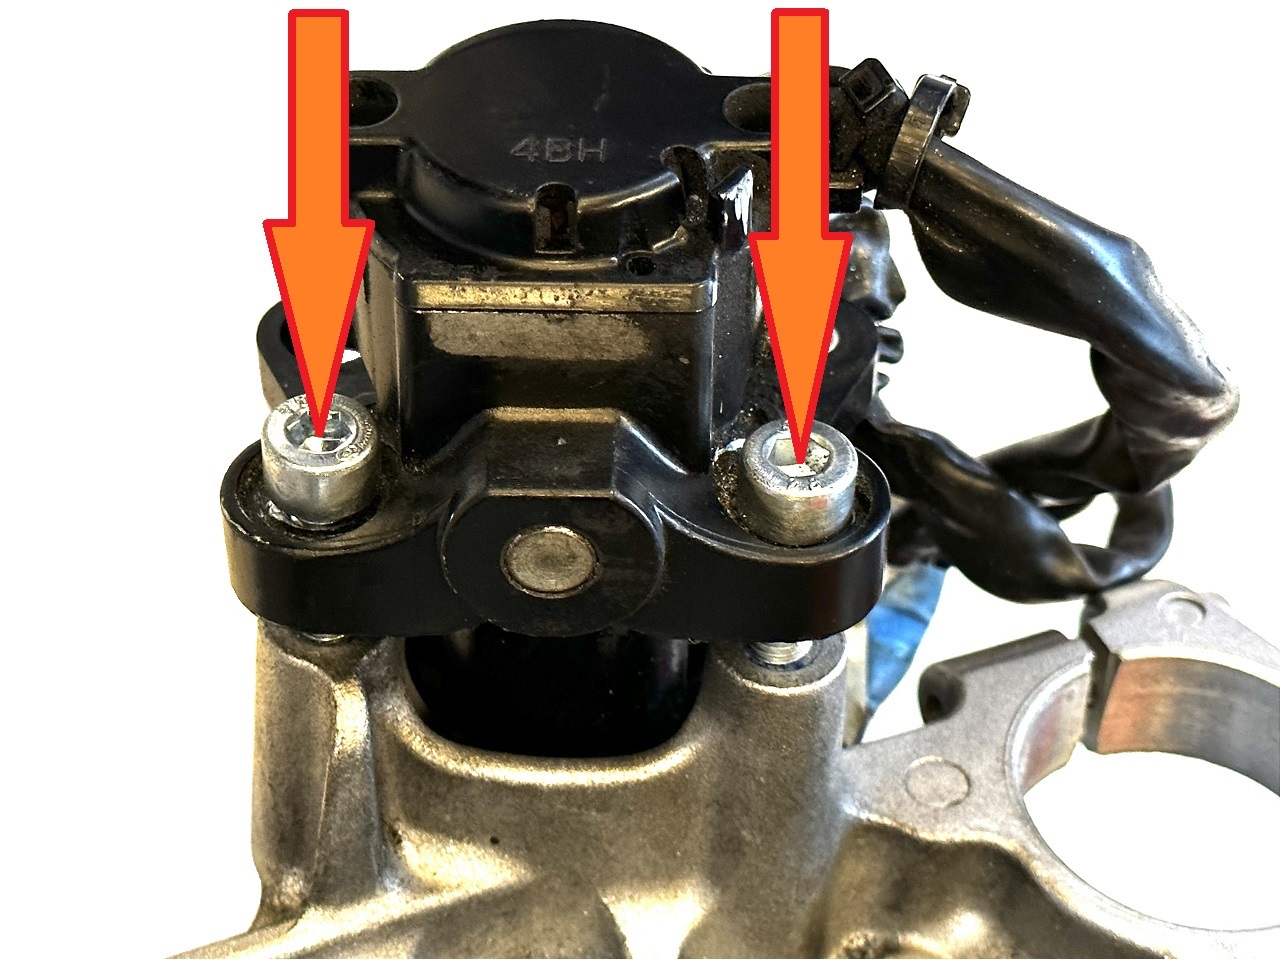 Yamaha motor startonderbreker breekbouten / afbreek bouten verwijderen service + nieuwe bouten - Klik op de afbeelding om het venster te sluiten